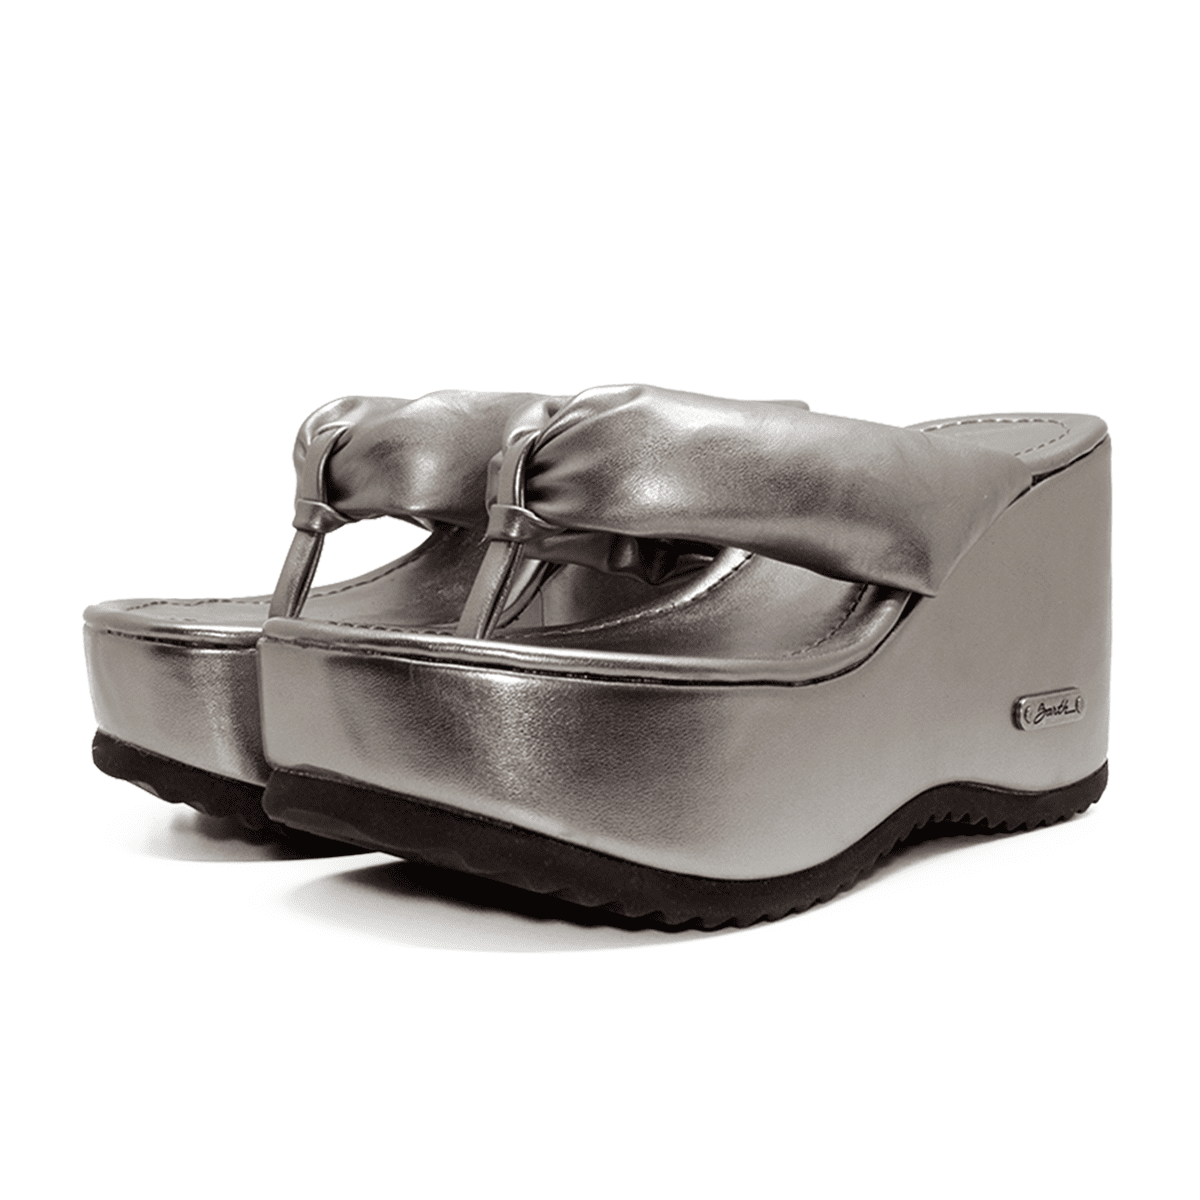 Tamanco Plataforma Barth Shoes Malibu Metalizado